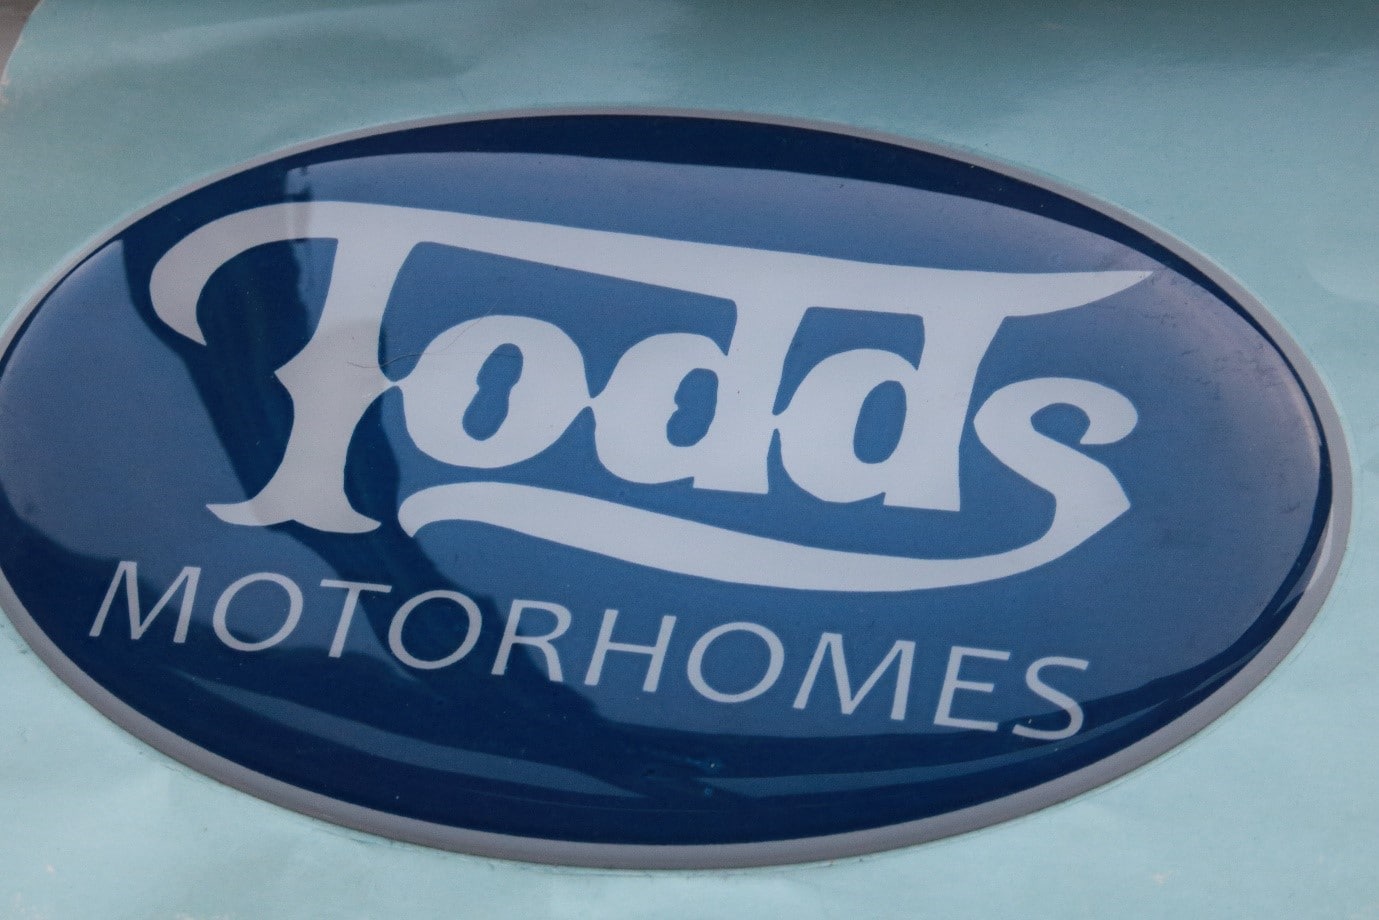 Todds motorhomes domed badge industrial branding